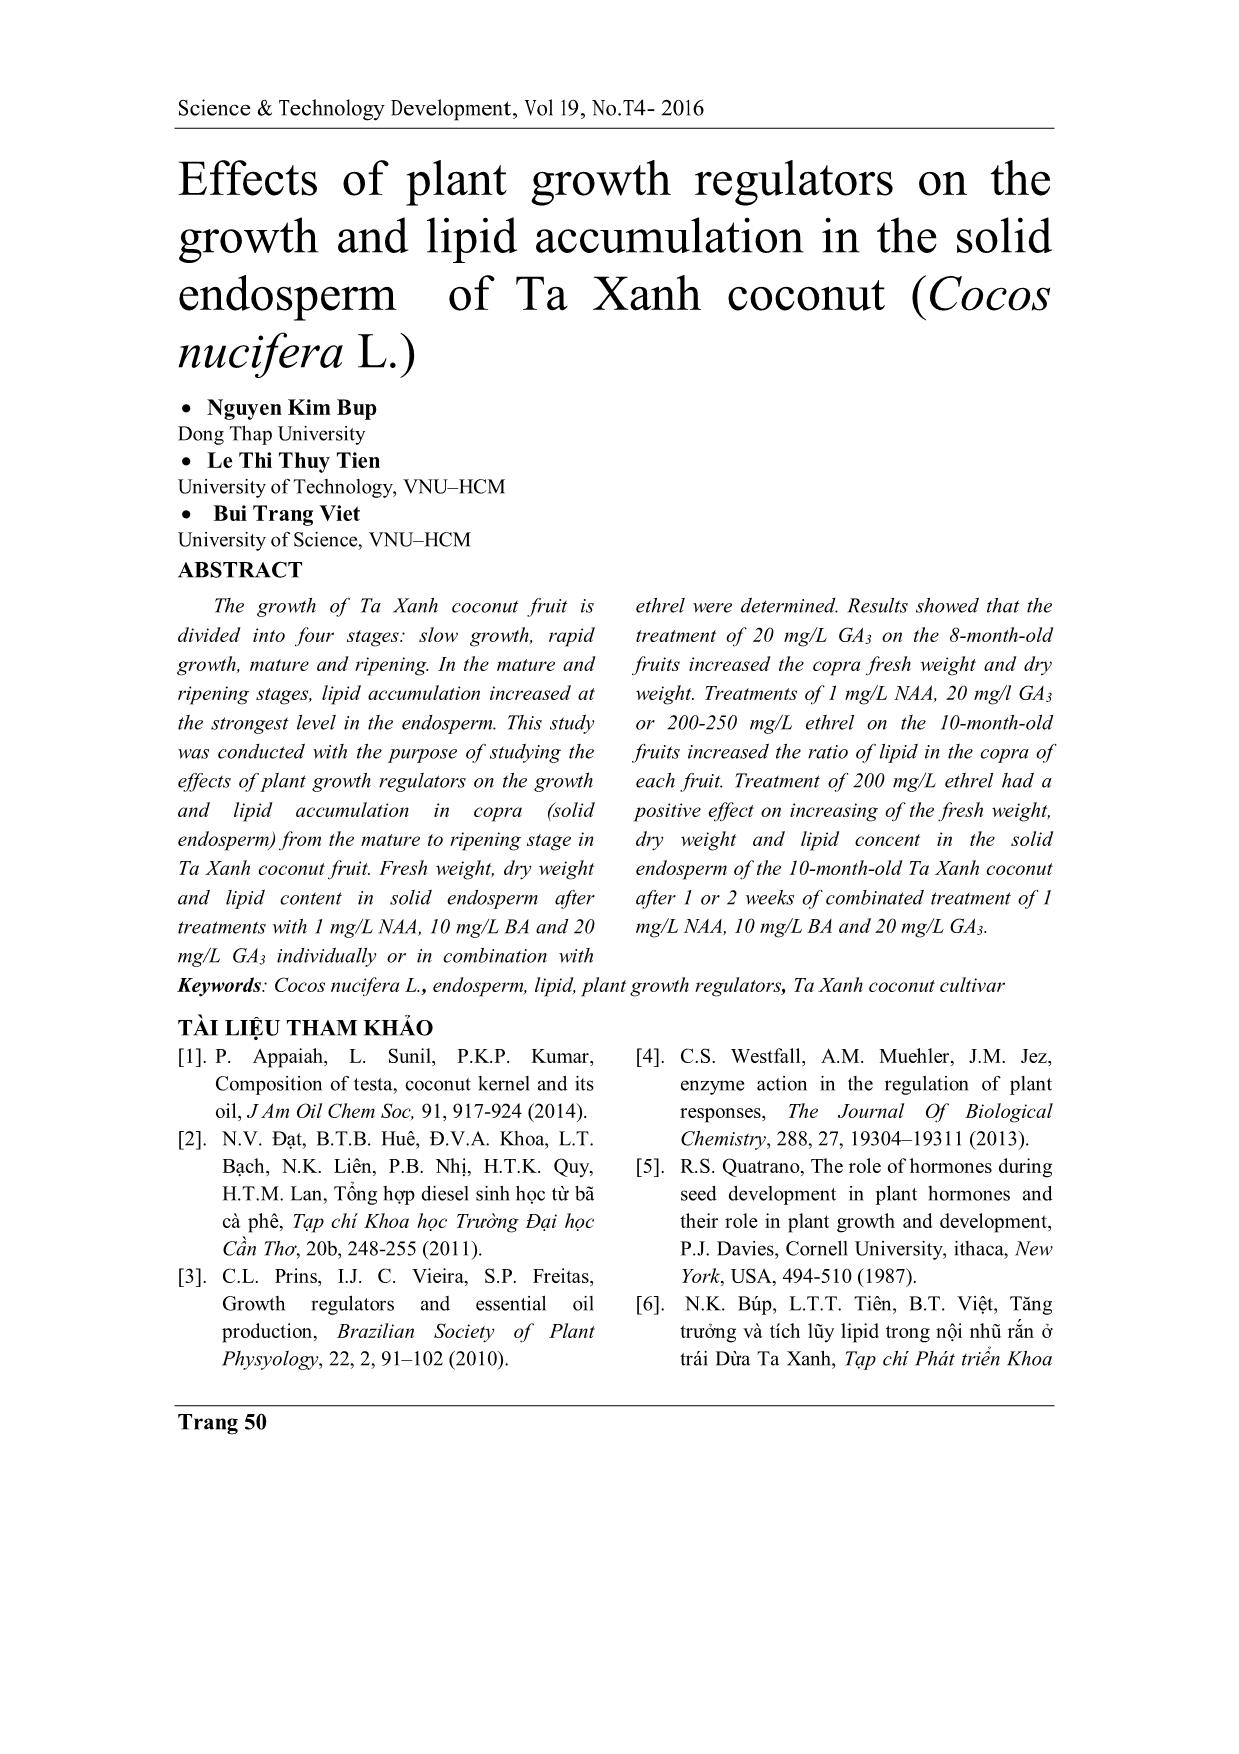 Ảnh hưởng của các chất điều hòa sinh trưởng thực vật lên sự tăng trưởng và tích lũy lipid trong nội nhũ rắn của trái Dừa Ta Xanh (Cocos nucifera L.) trang 8